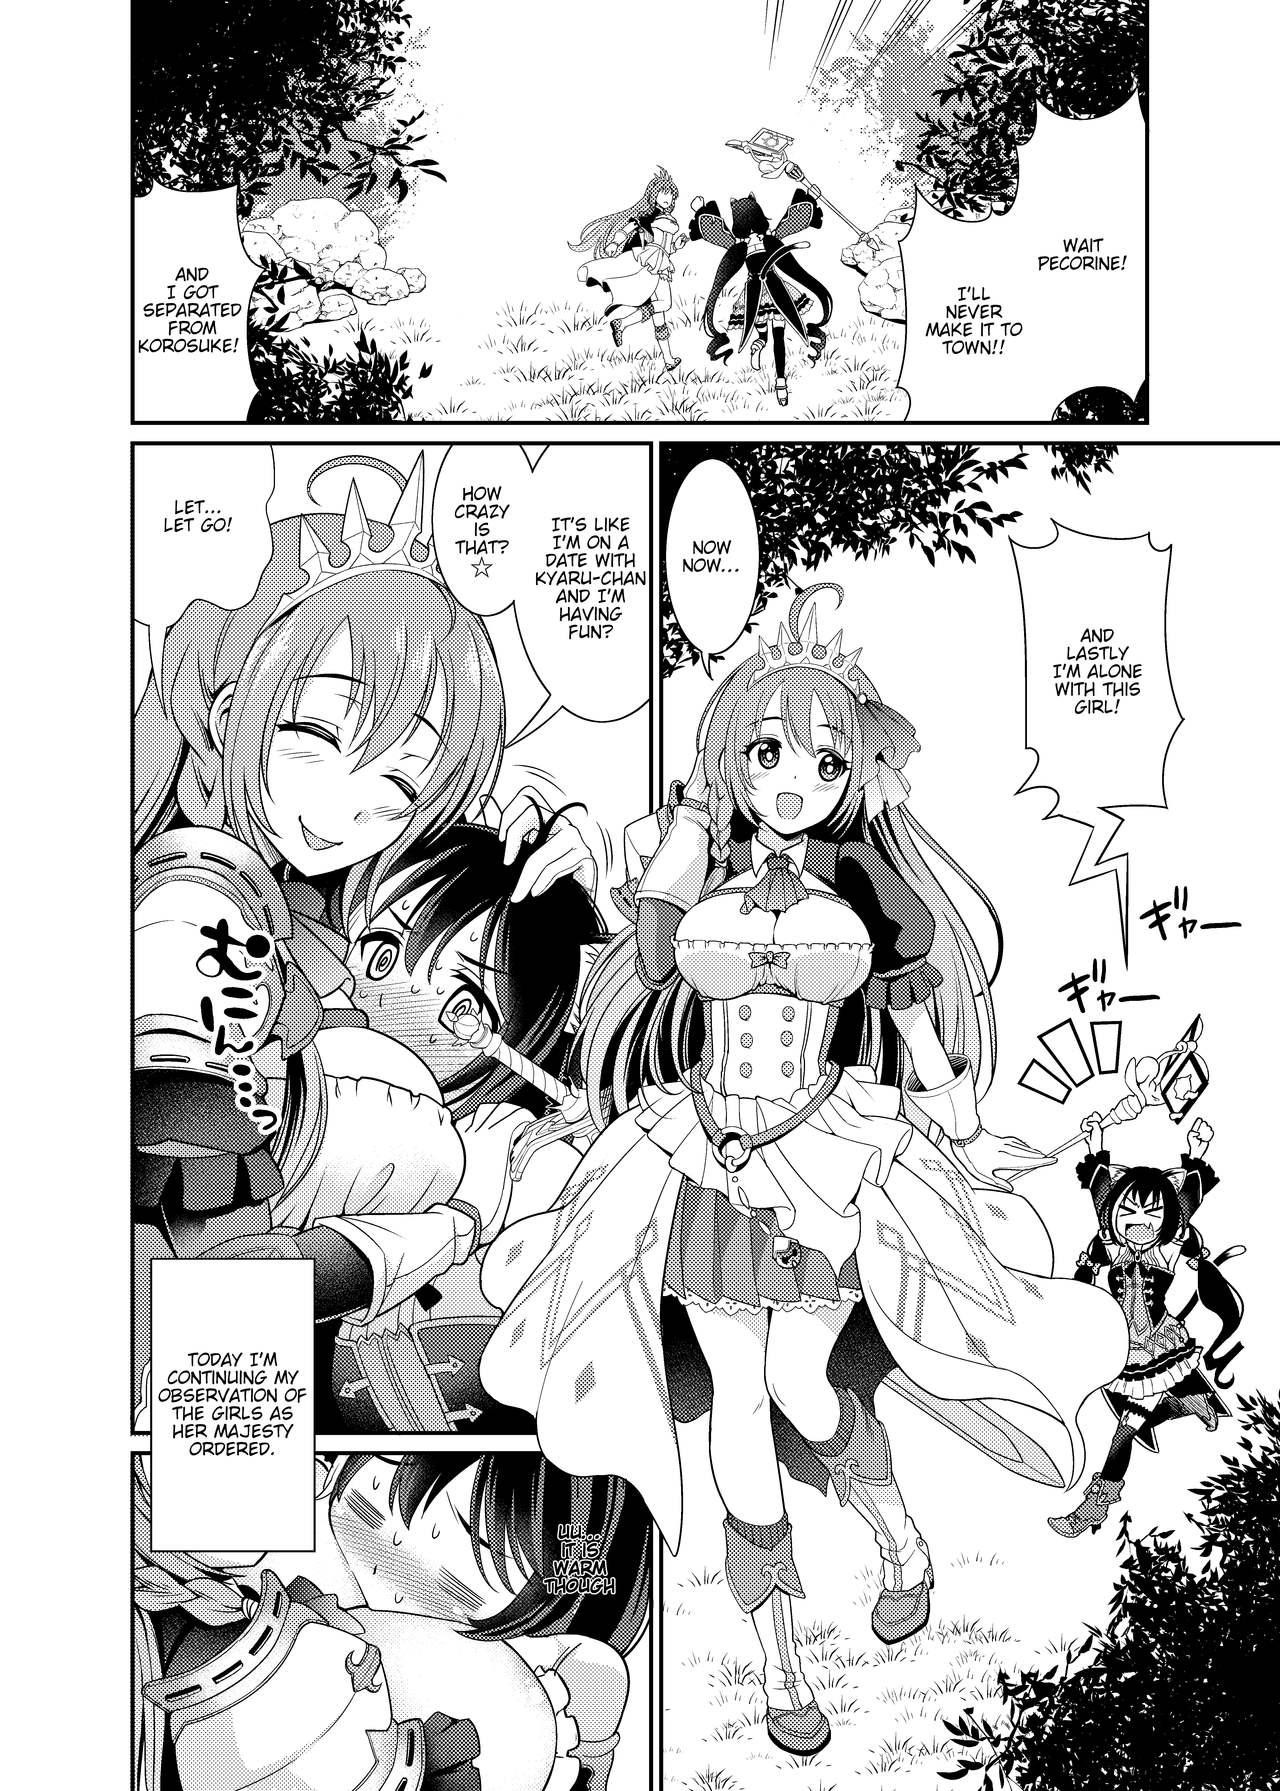 Dildos Mamono nante Taberu kara... Ochinchin ga Haechau no yo!! - Princess connect Amazing - Page 4